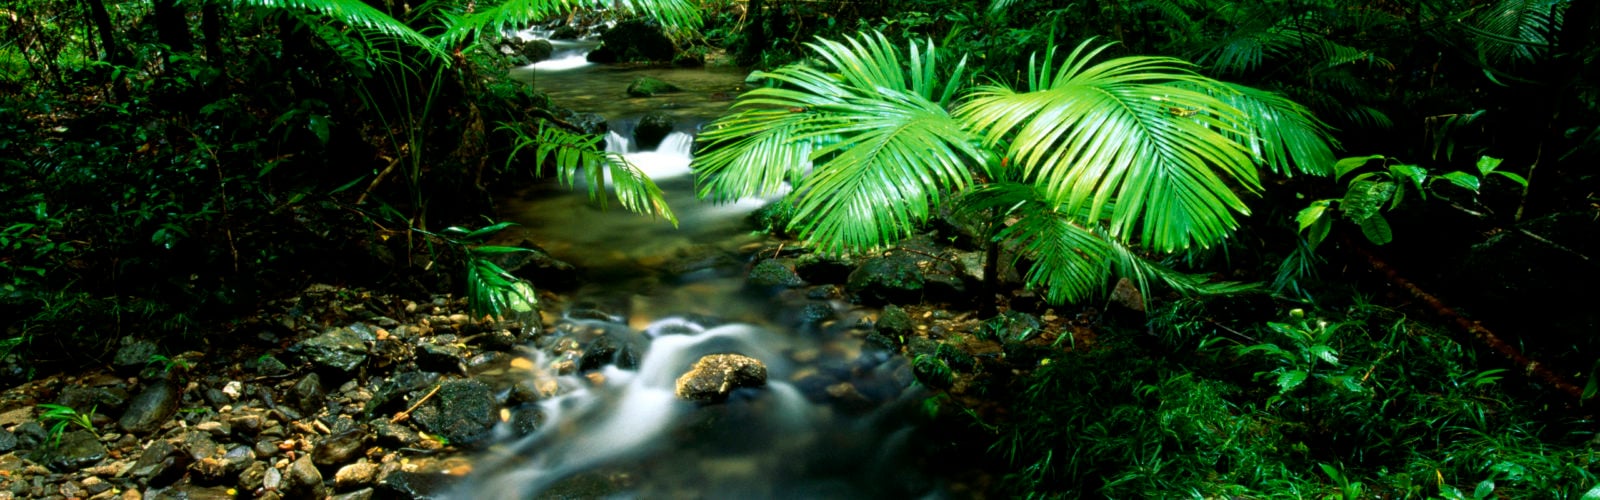 A River flows through Daintree Rainforest, Australia